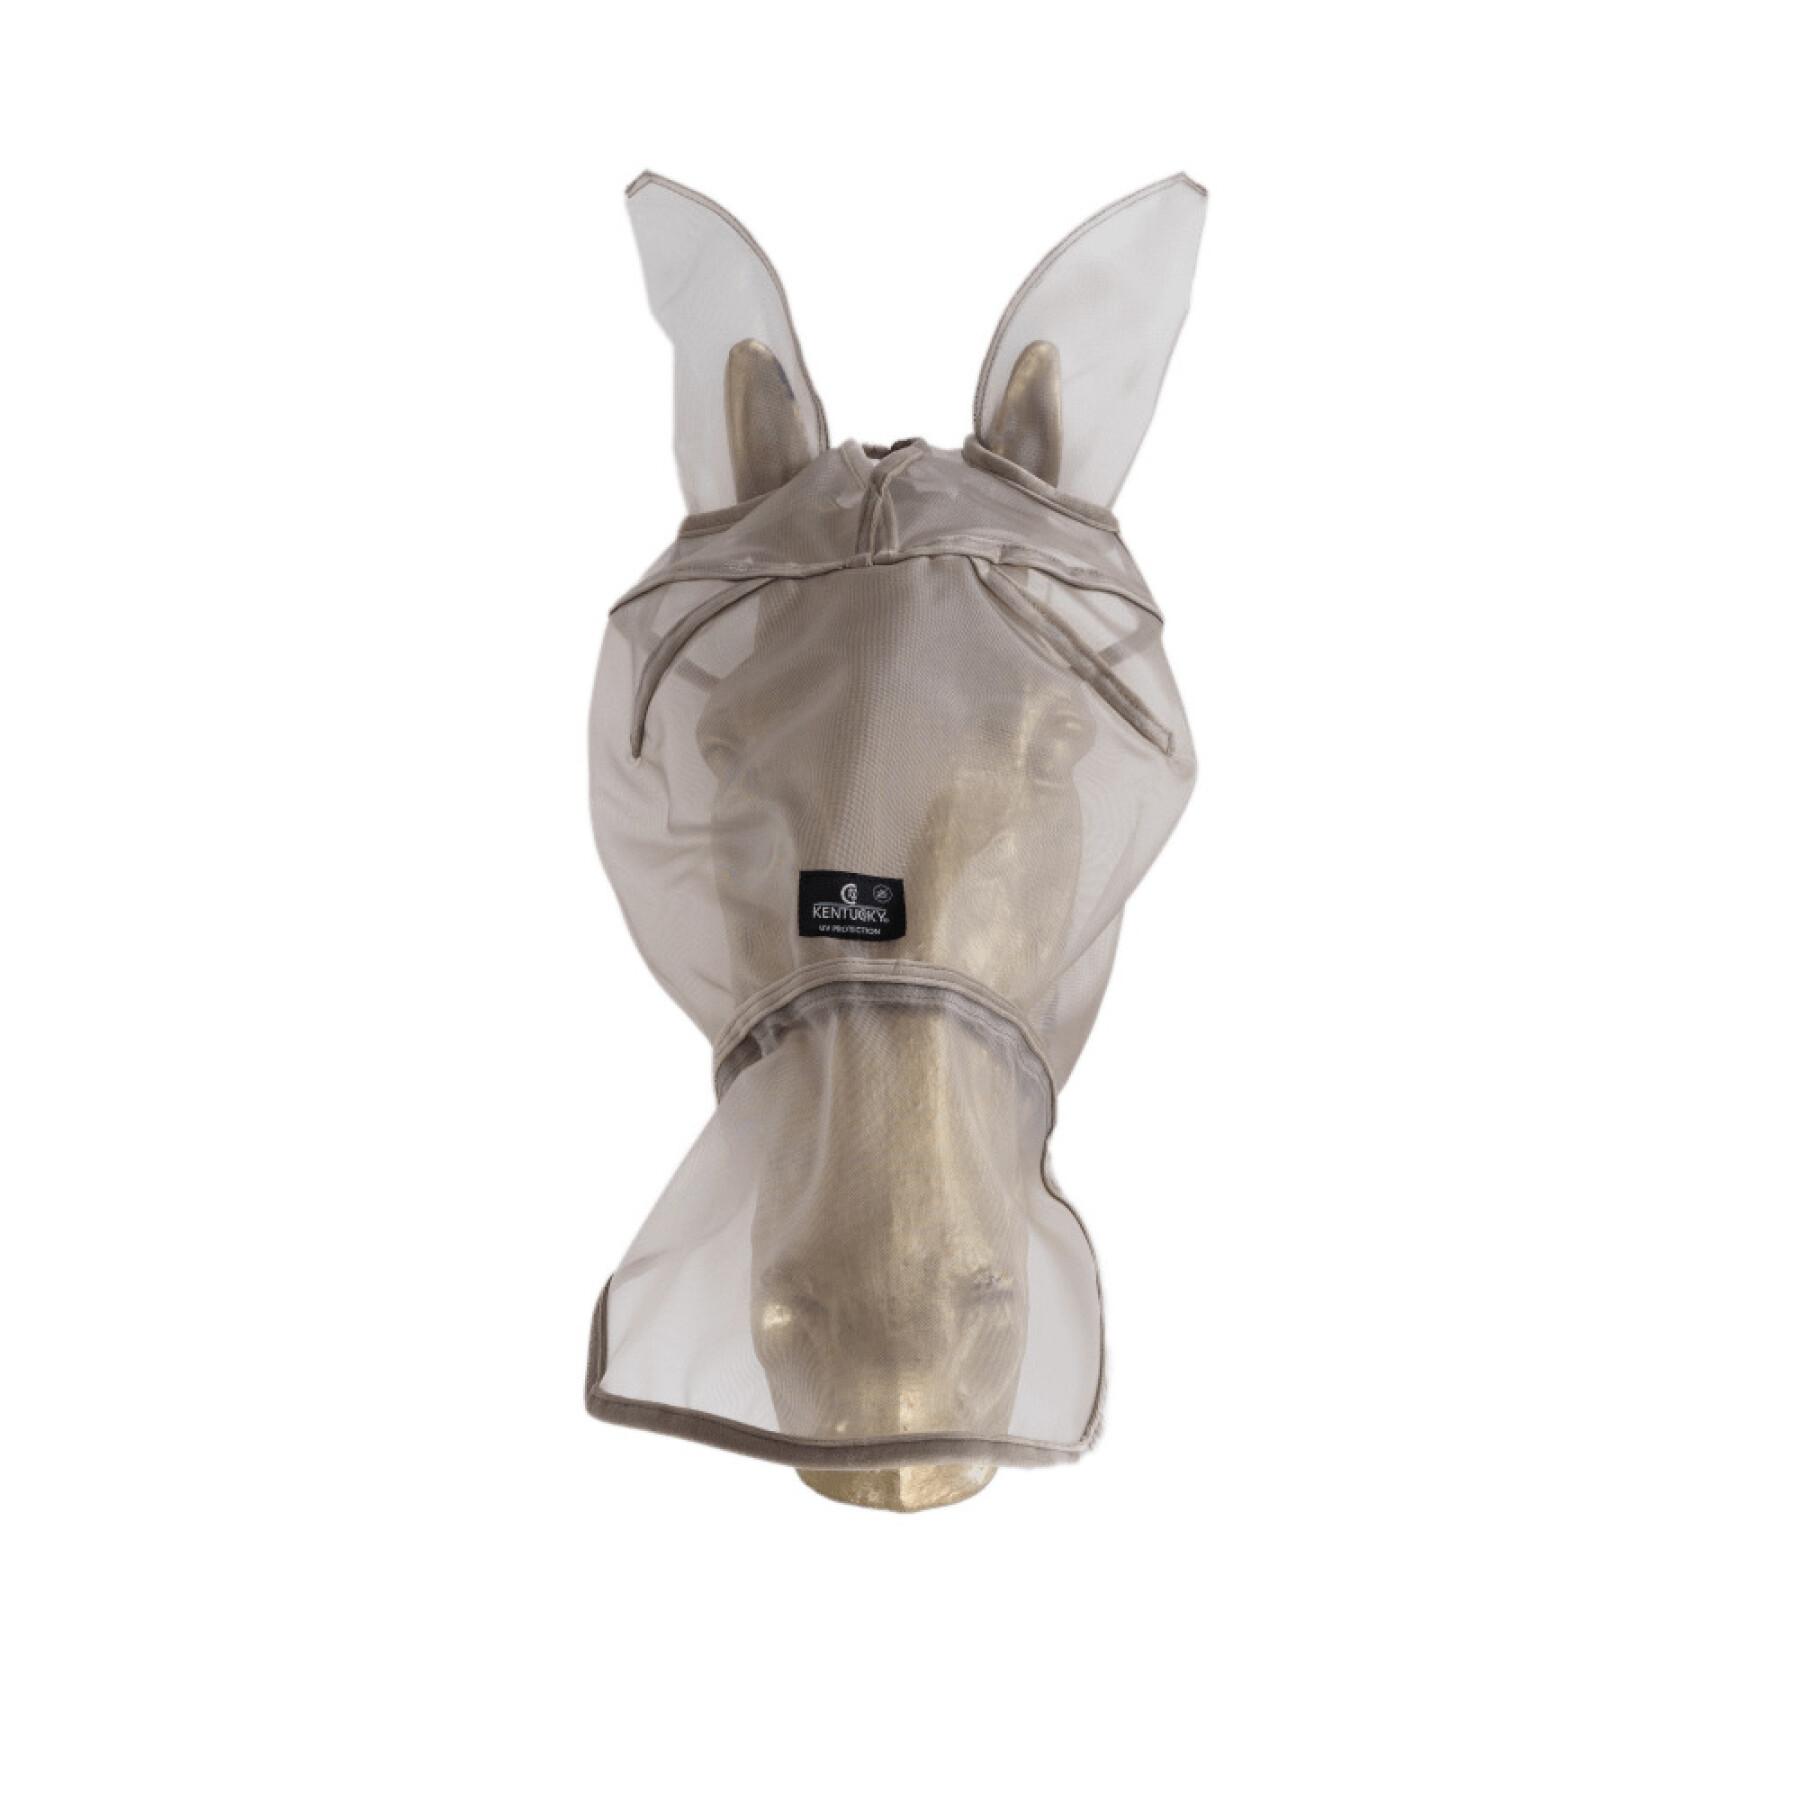 Máscara anti-moscas para caballos con orejas y bozal anti-uv Kentucky Classic